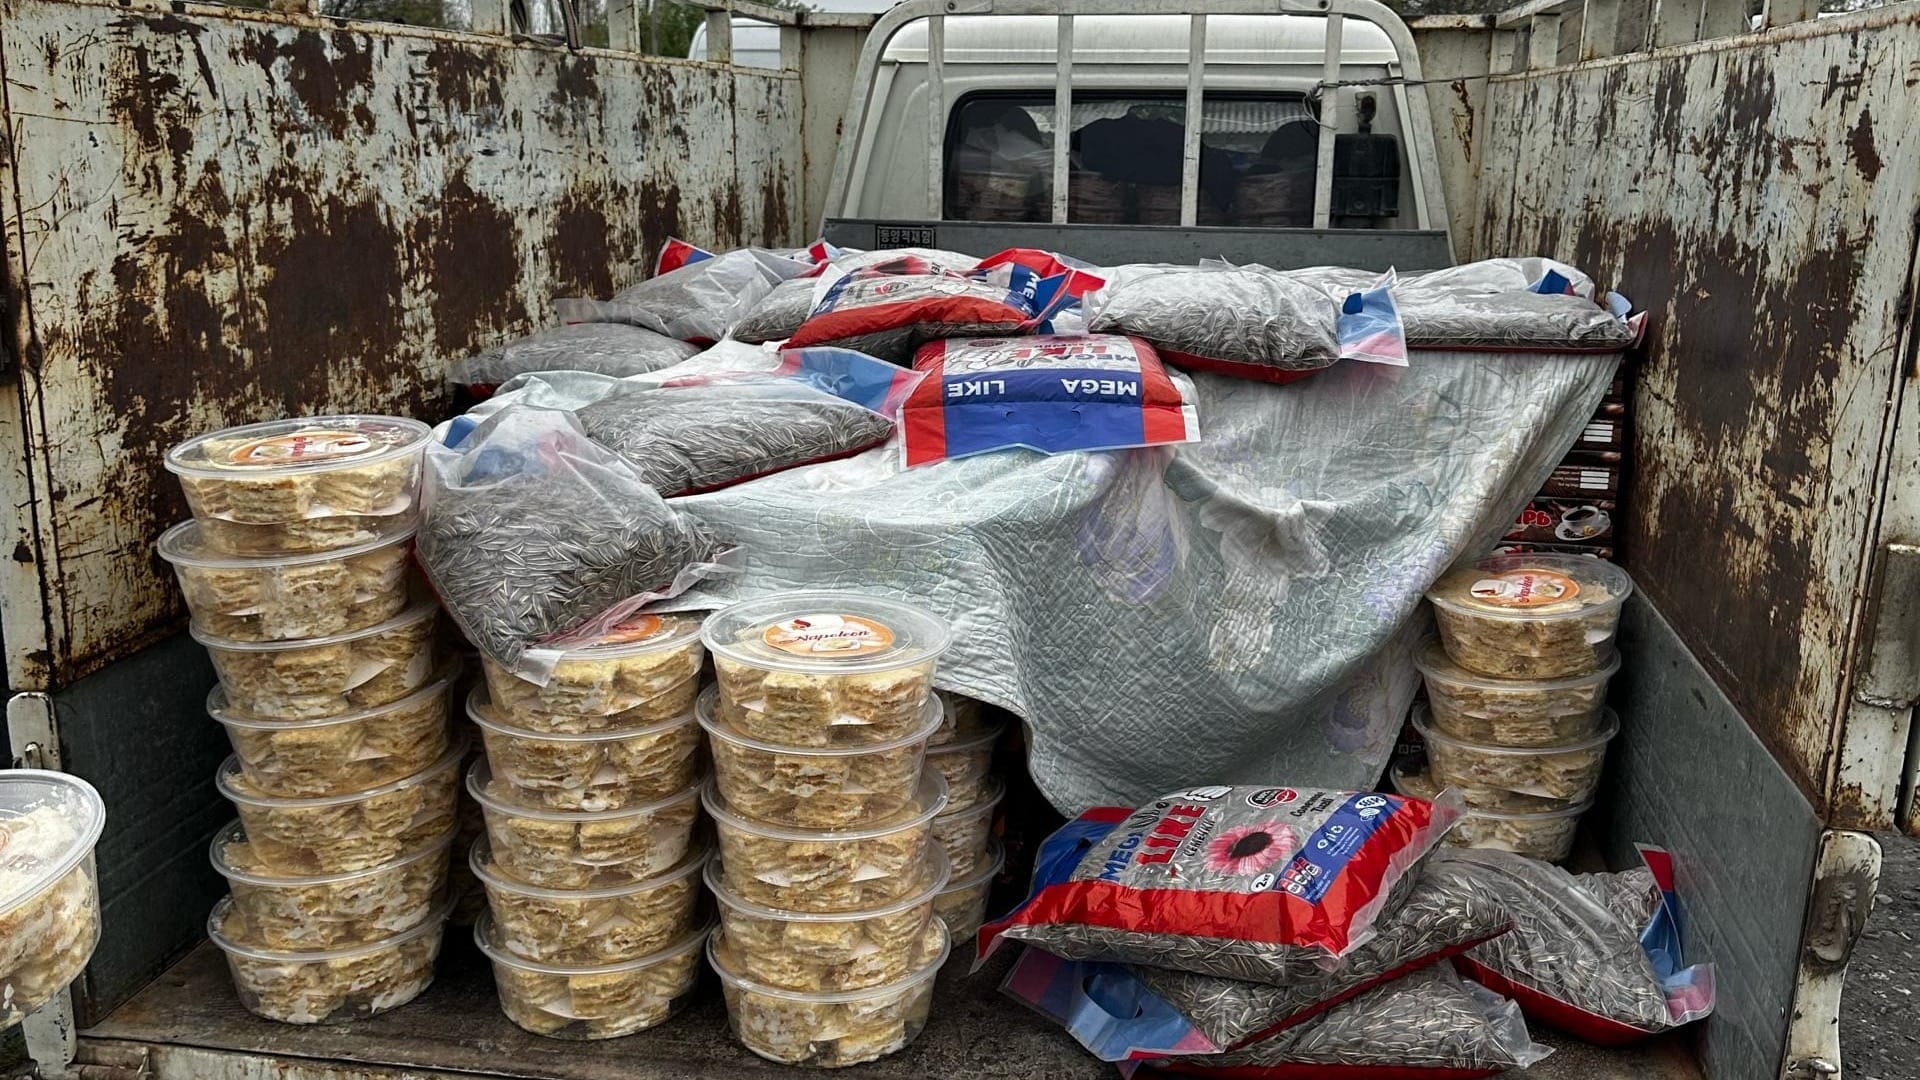 Таможенники пресекли попытки незаконного ввоза в Кыргызстан товаров на 200 тысяч сомов